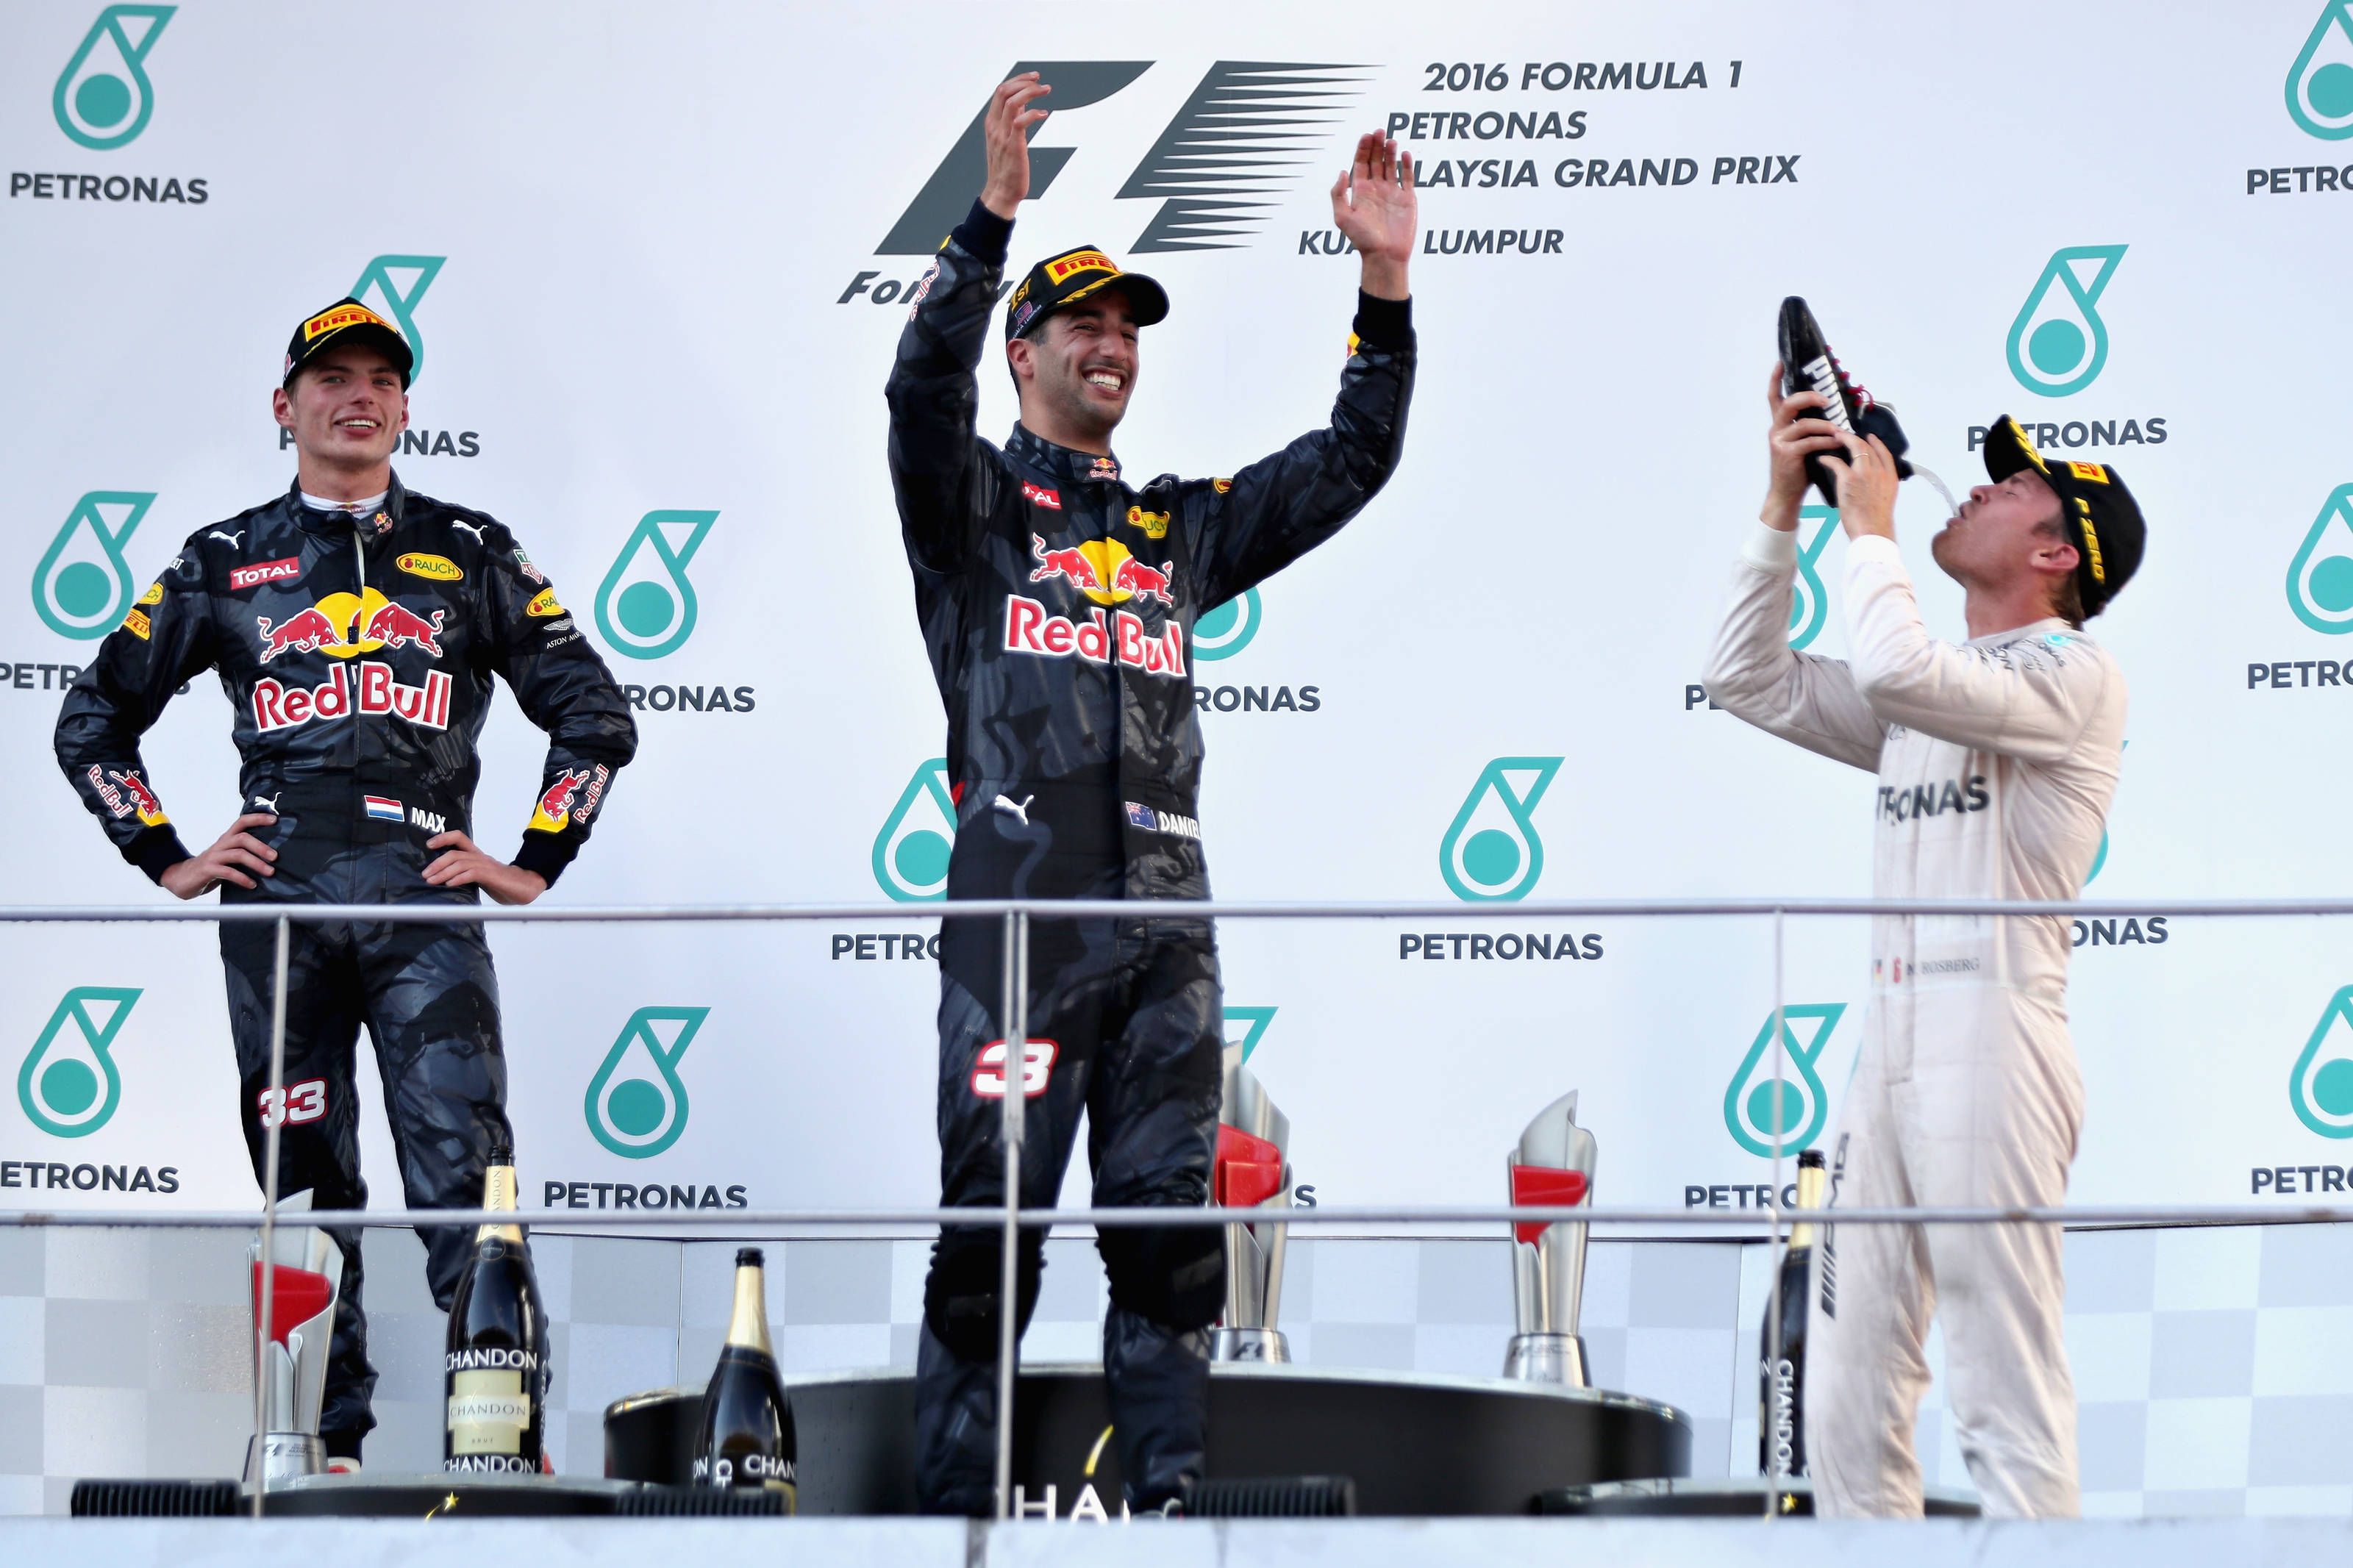 Anche Rosberg, come Horner e Verstappen, partecipano allo Shoey del vincitore Ricciardo (foto da: wtf1.co.uk)